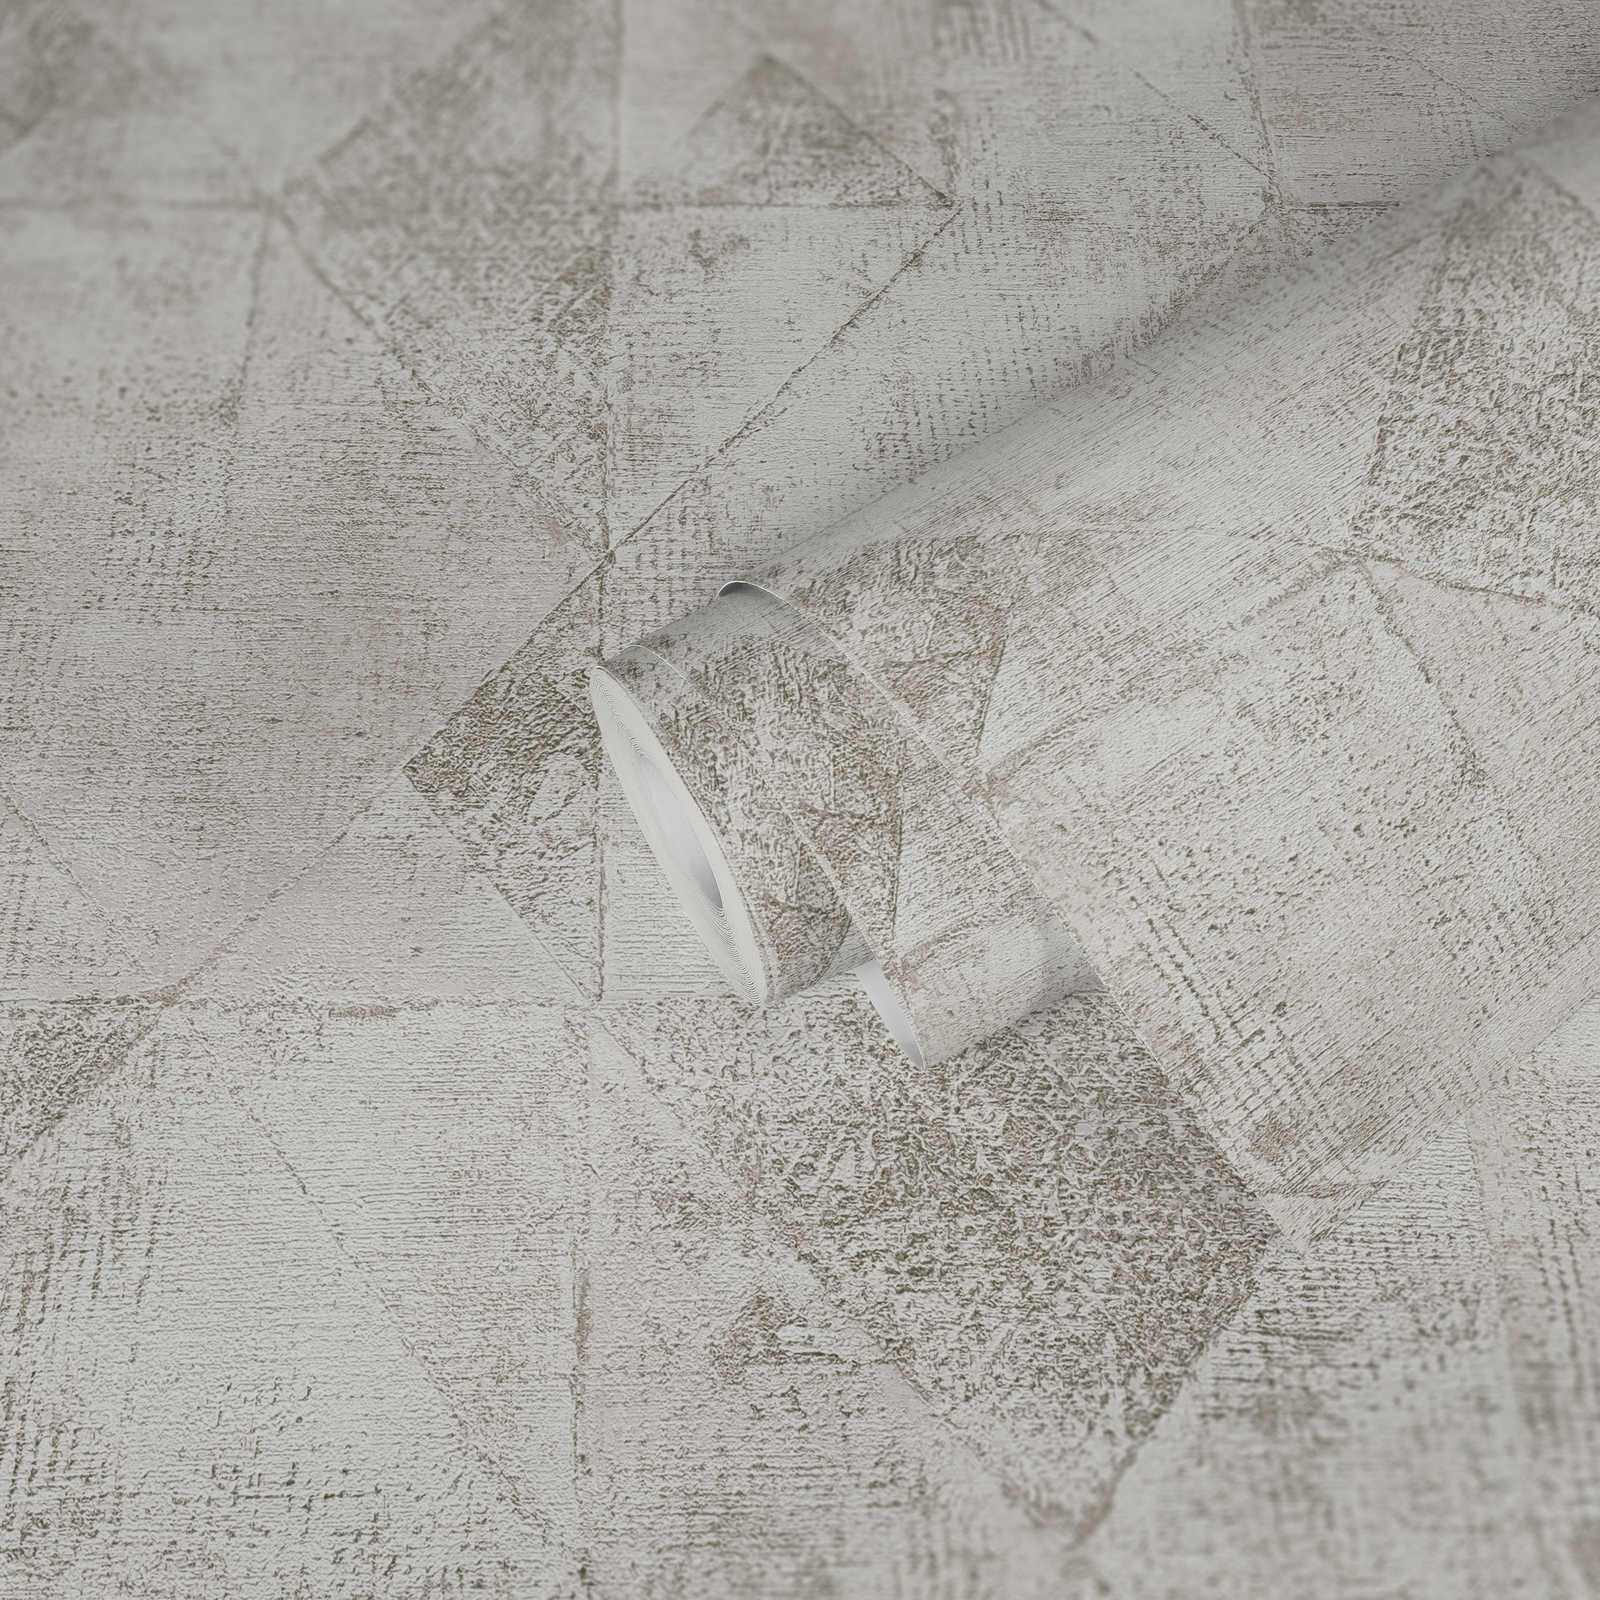             Carta da parati con motivo grafico a triangoli metallici con texture lucida - argento, bianco
        